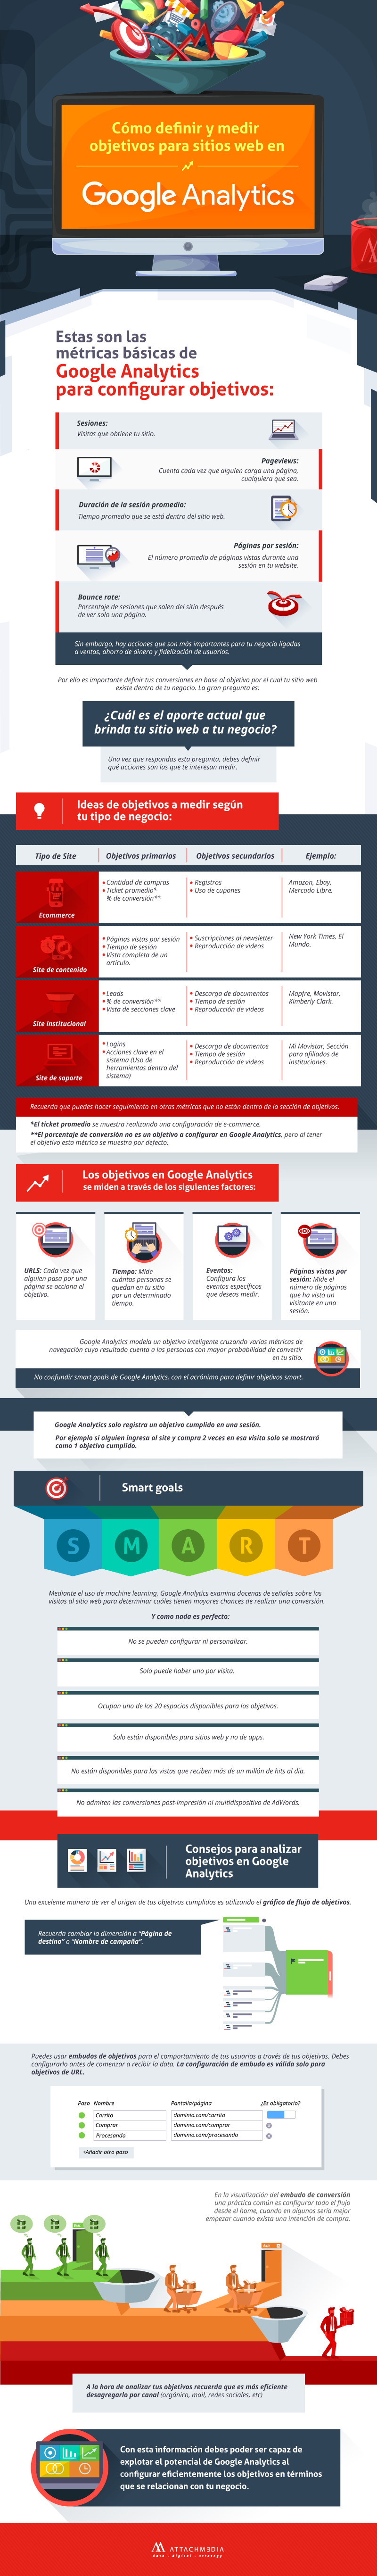 Definir objetivos en Google Analytics